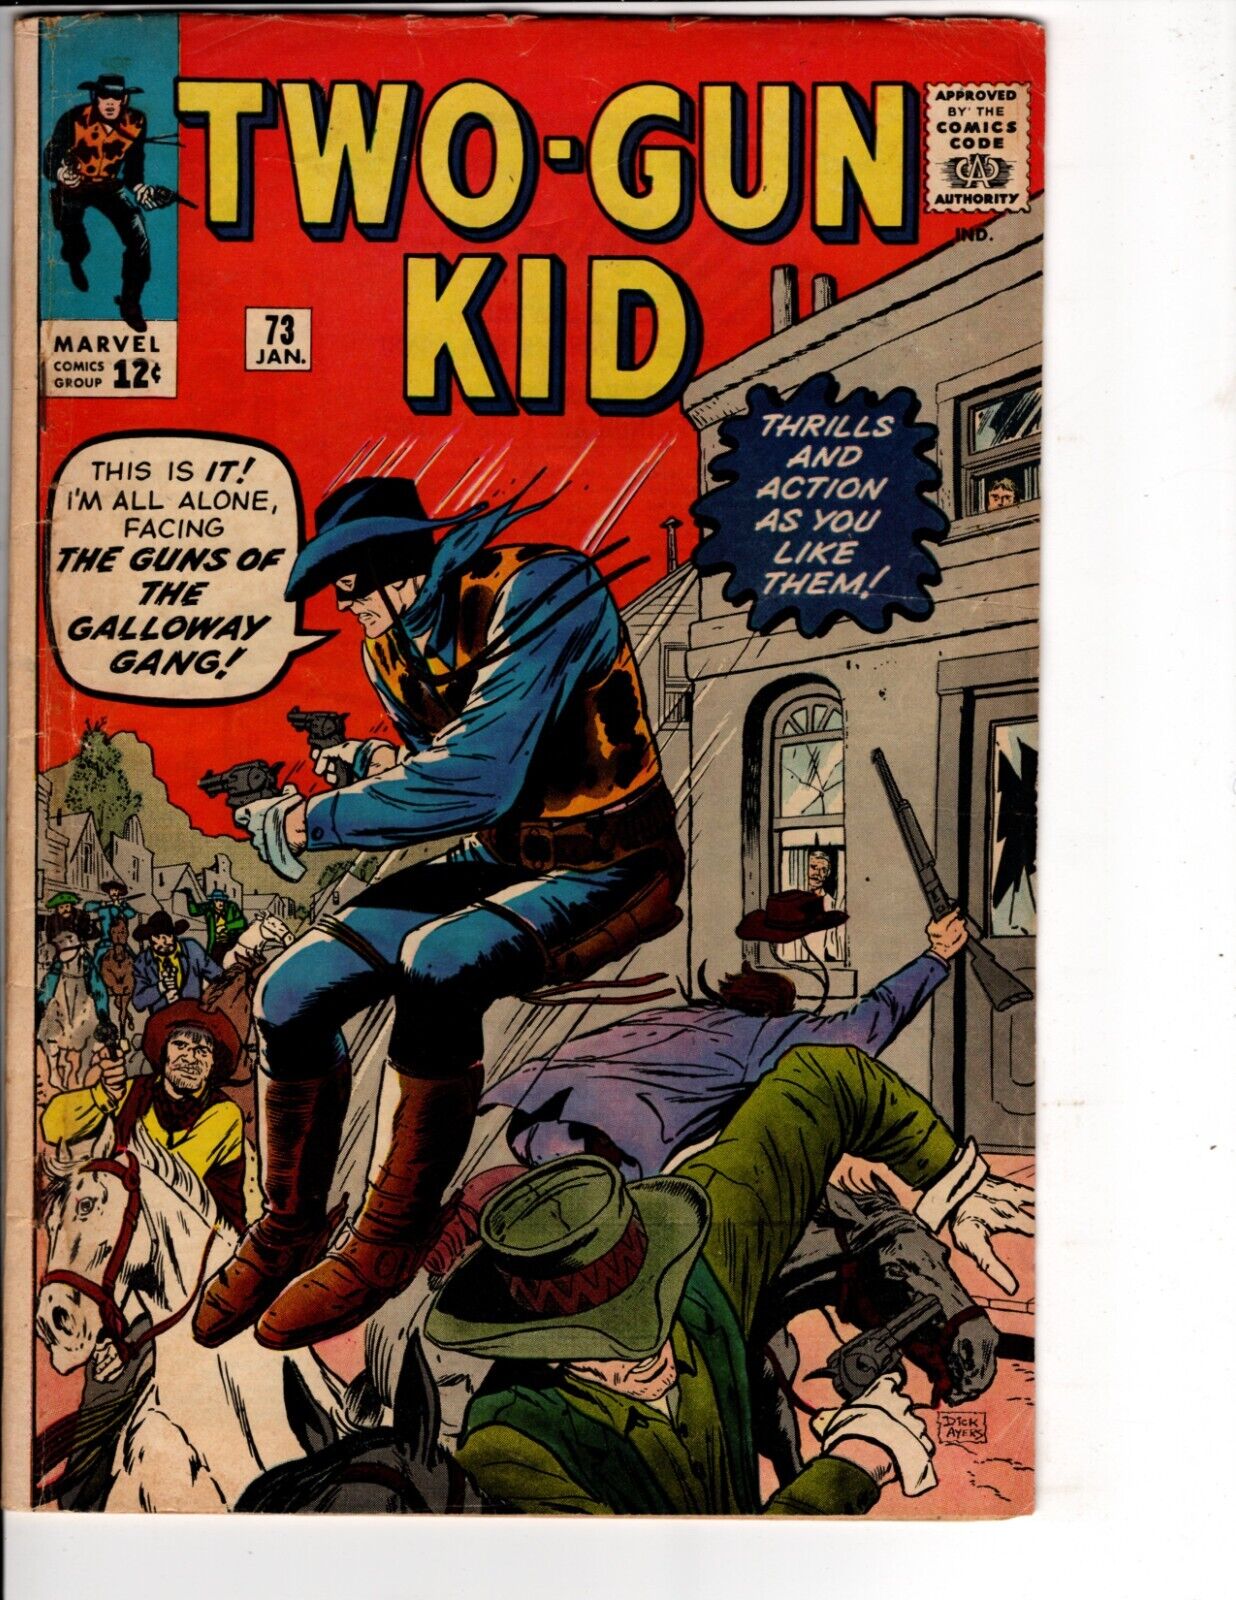 Two-Gun Kid #73 Western Comic Book Marvel 1965 Stan Lee / Dick Ayers